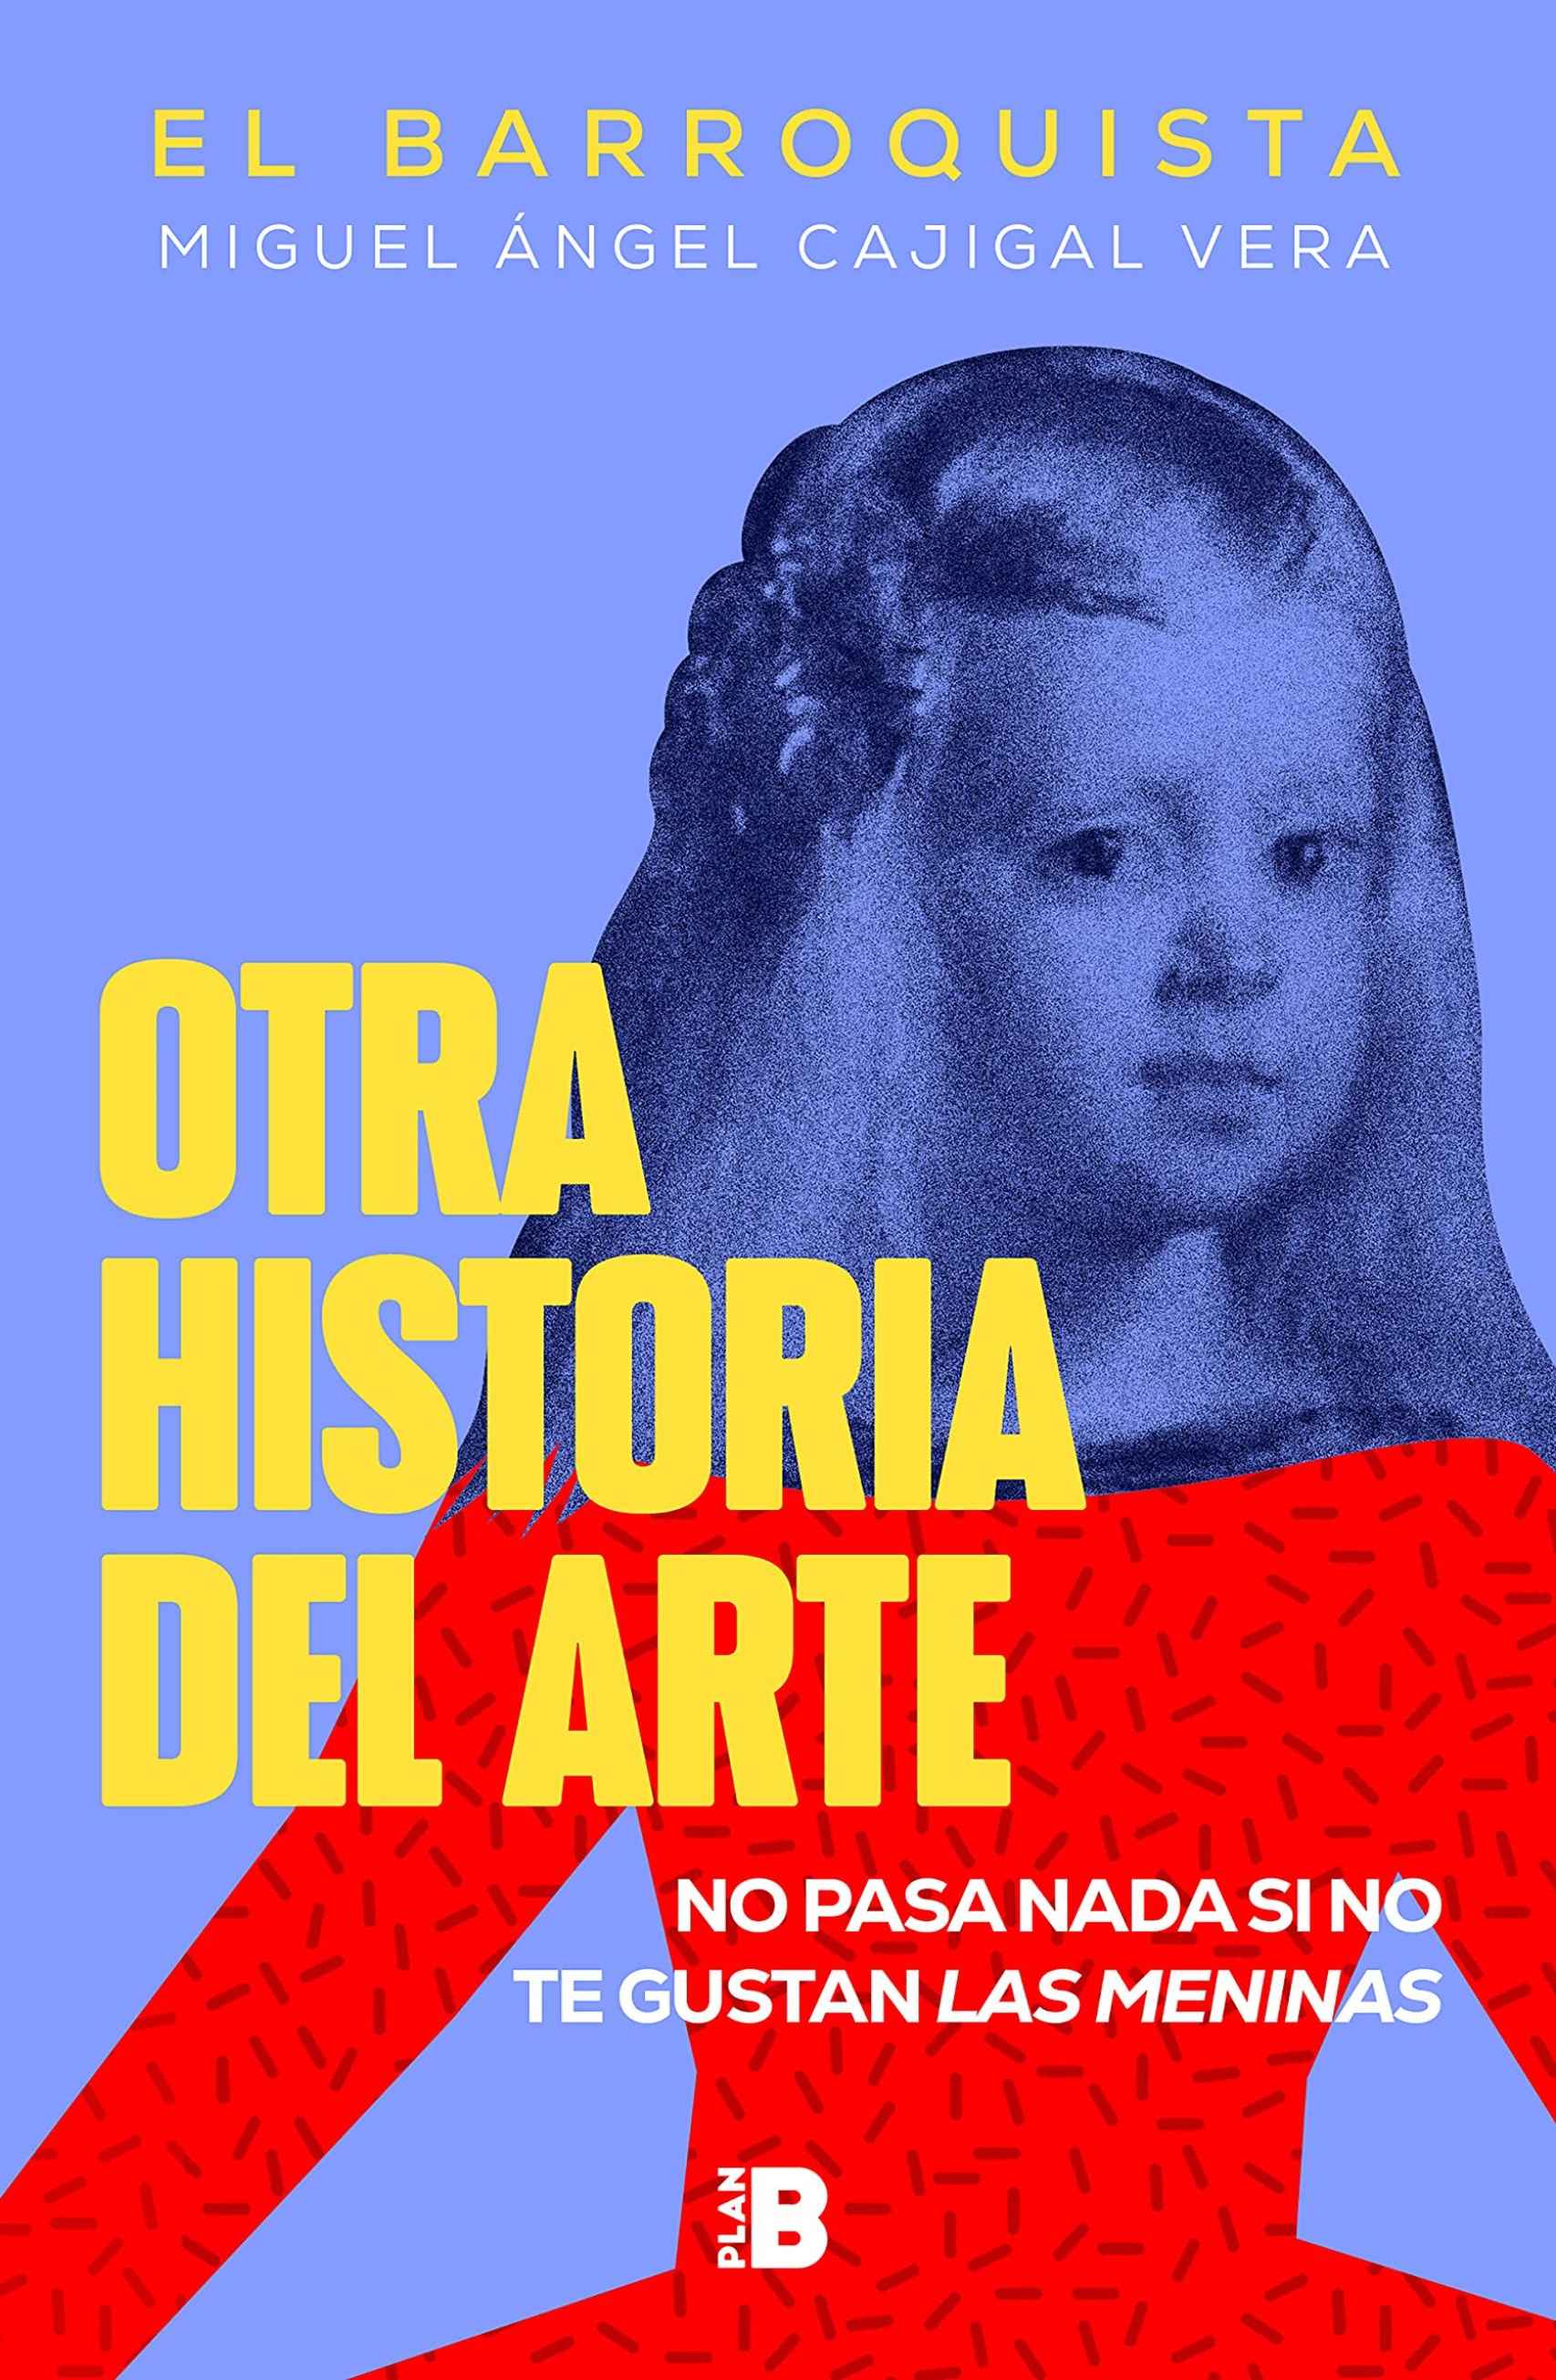 Portada de 'Otra historia del arte' (PlanB) de El Barroquista.